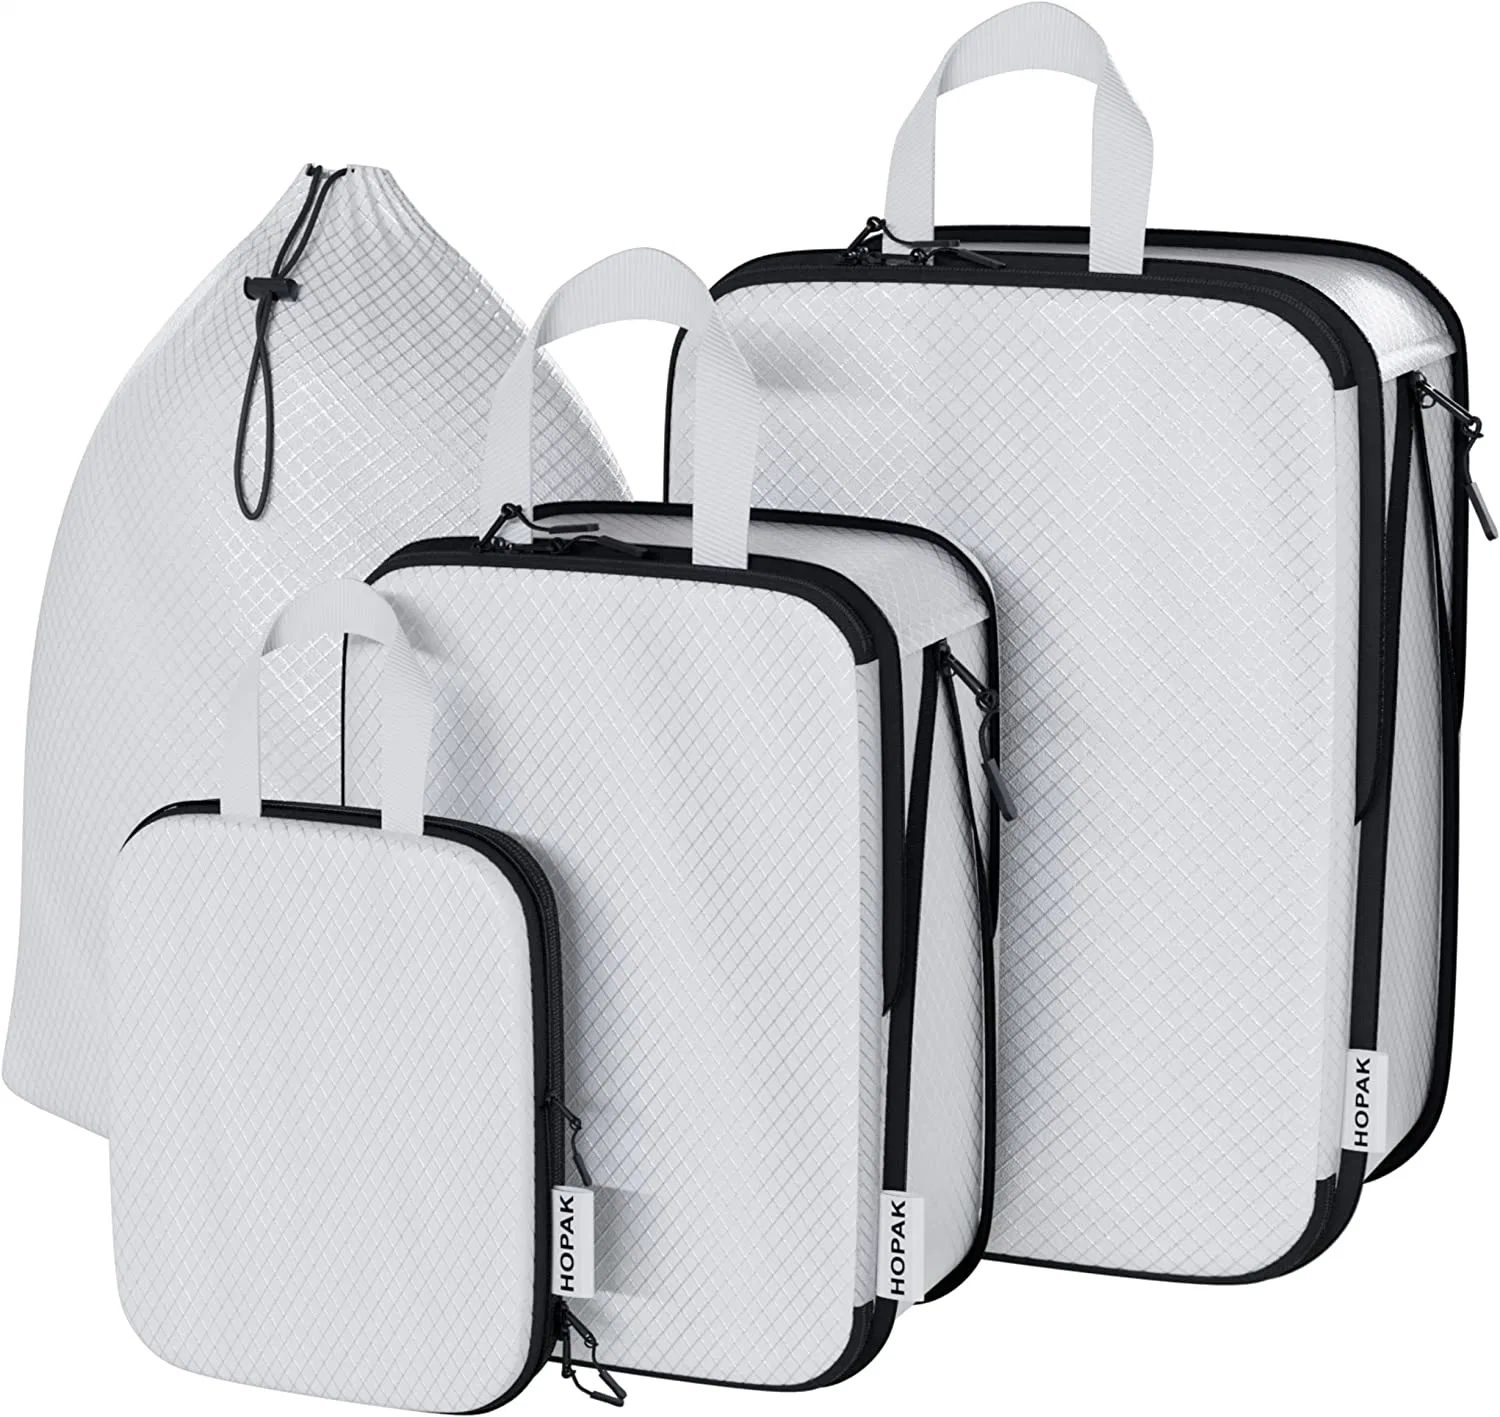 3 مجموعات حقائب سفر مع حقيبة رباط - نظام ضغط مزدوج بسحاب لترتيب الأشياء للسفر - مكعبات تخزين